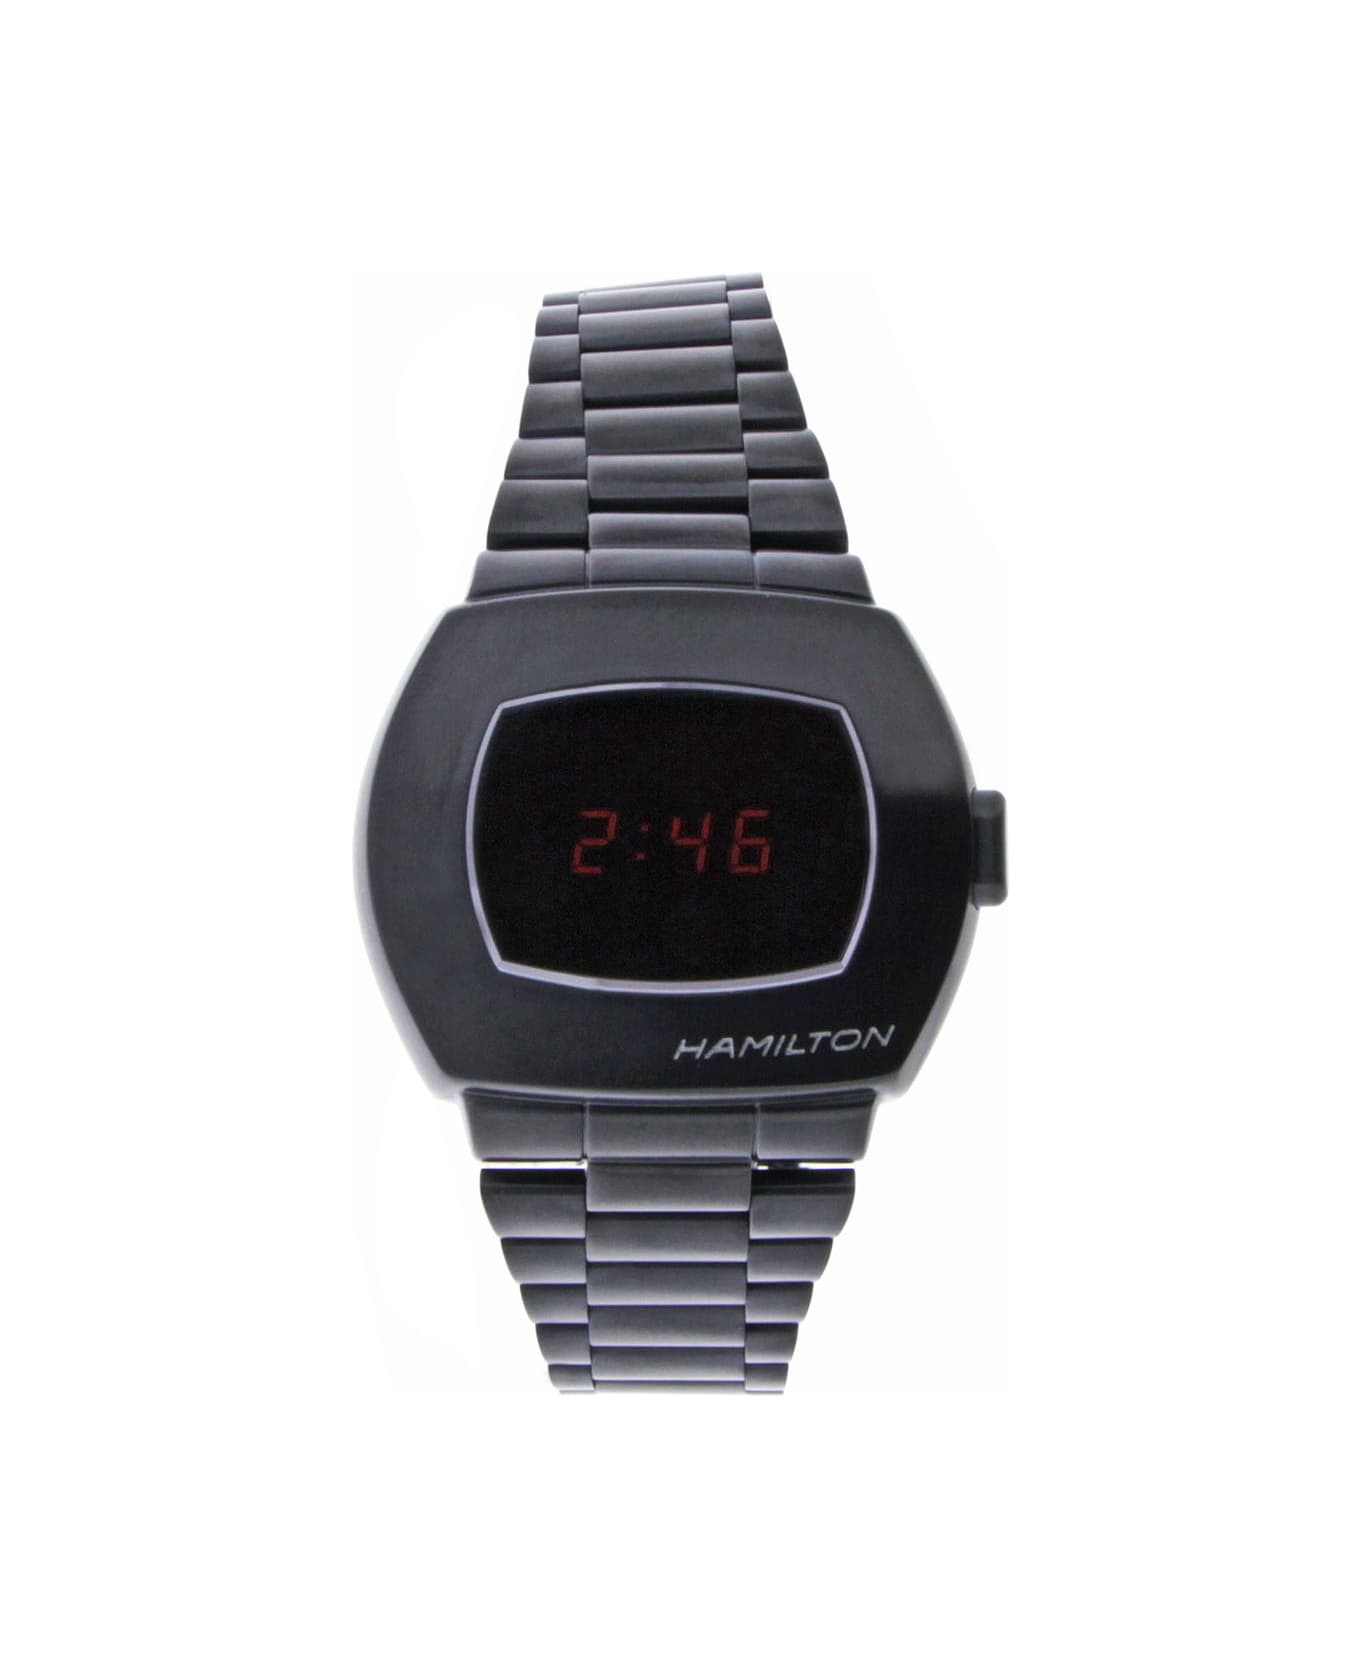 Hamilton American Classic Psr Digital Quartz Watches